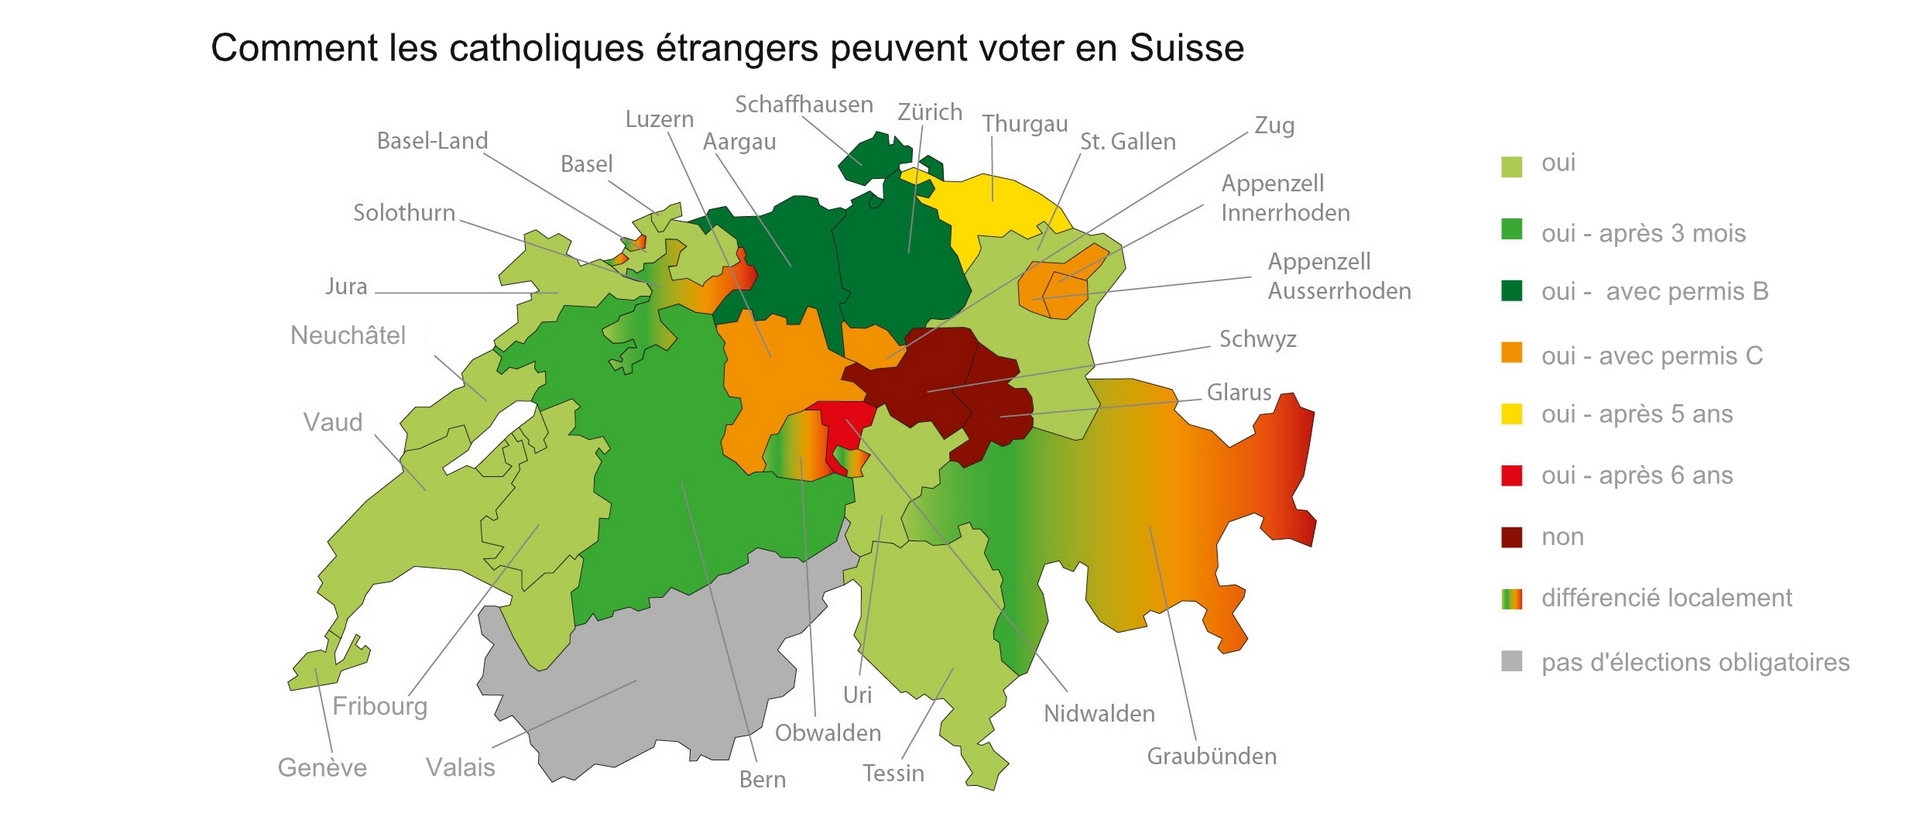 Paysage contrasté pour le droit de vote des catholiques étrangers en Suisse |  © kath.ch